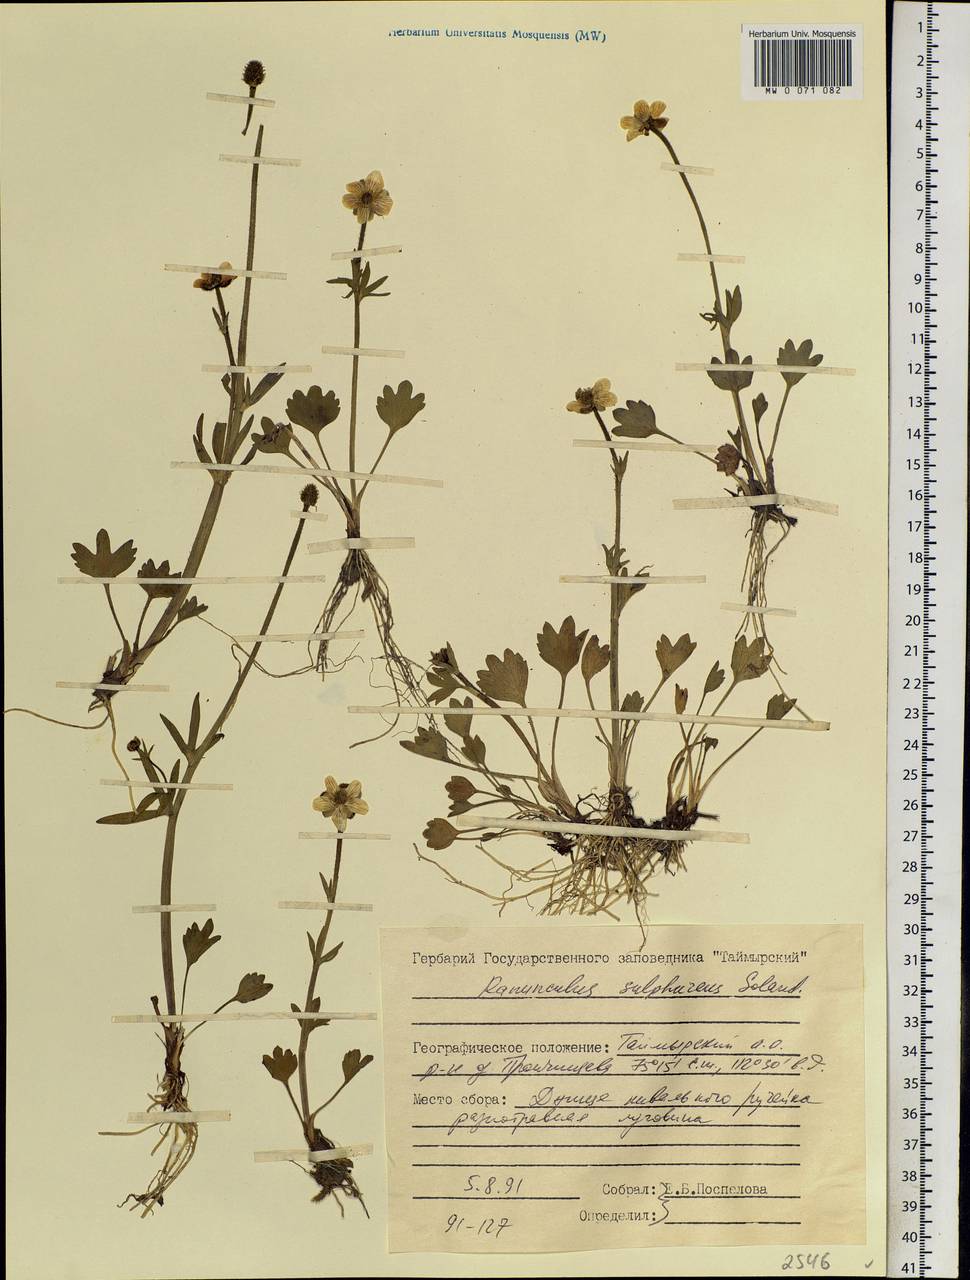 Ranunculus sulphureus Sol. ex J. B. Phipps, Siberia, Central Siberia (S3) (Russia)